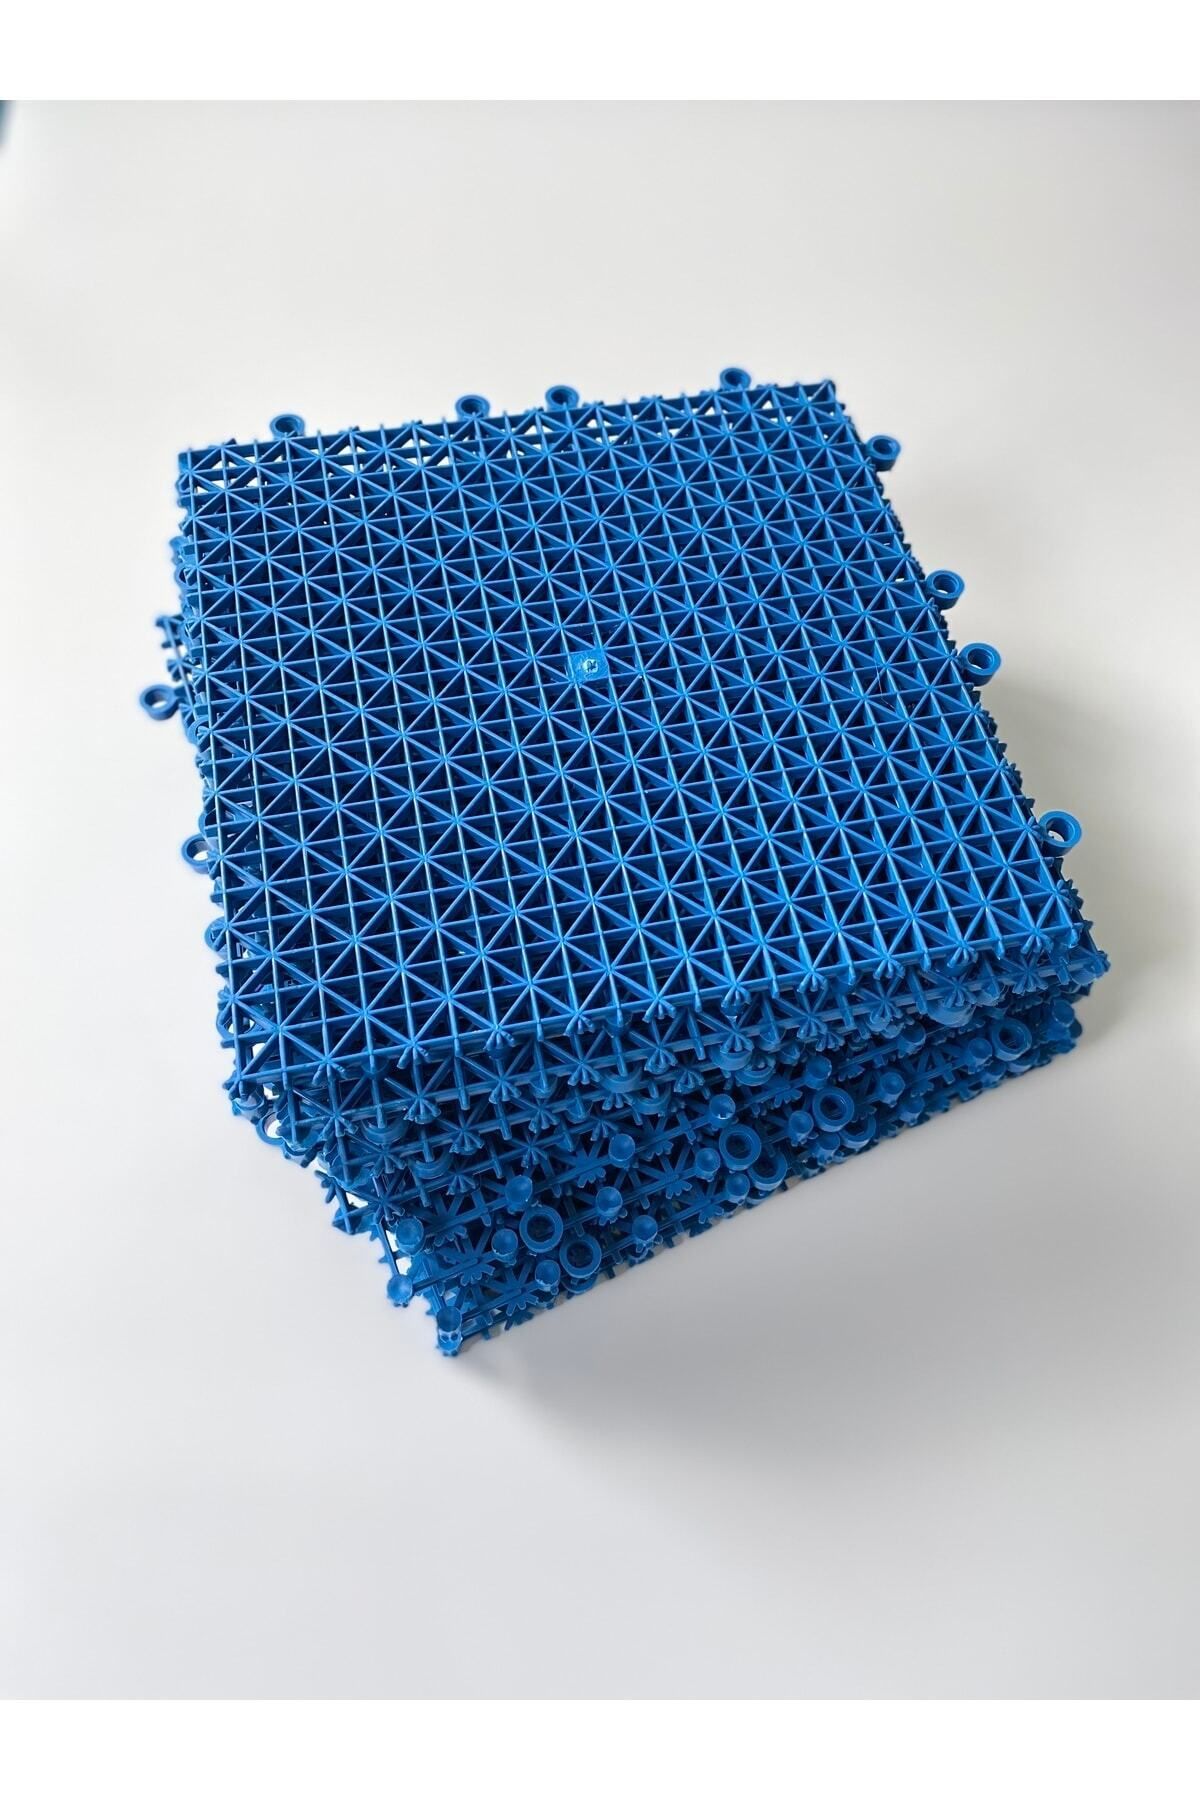 Gerçektrend Mavi, Plastik Kırılmaz Yer Karosu Zemin Kaplaması ( 1 Adet ) 25 X 25 Cm